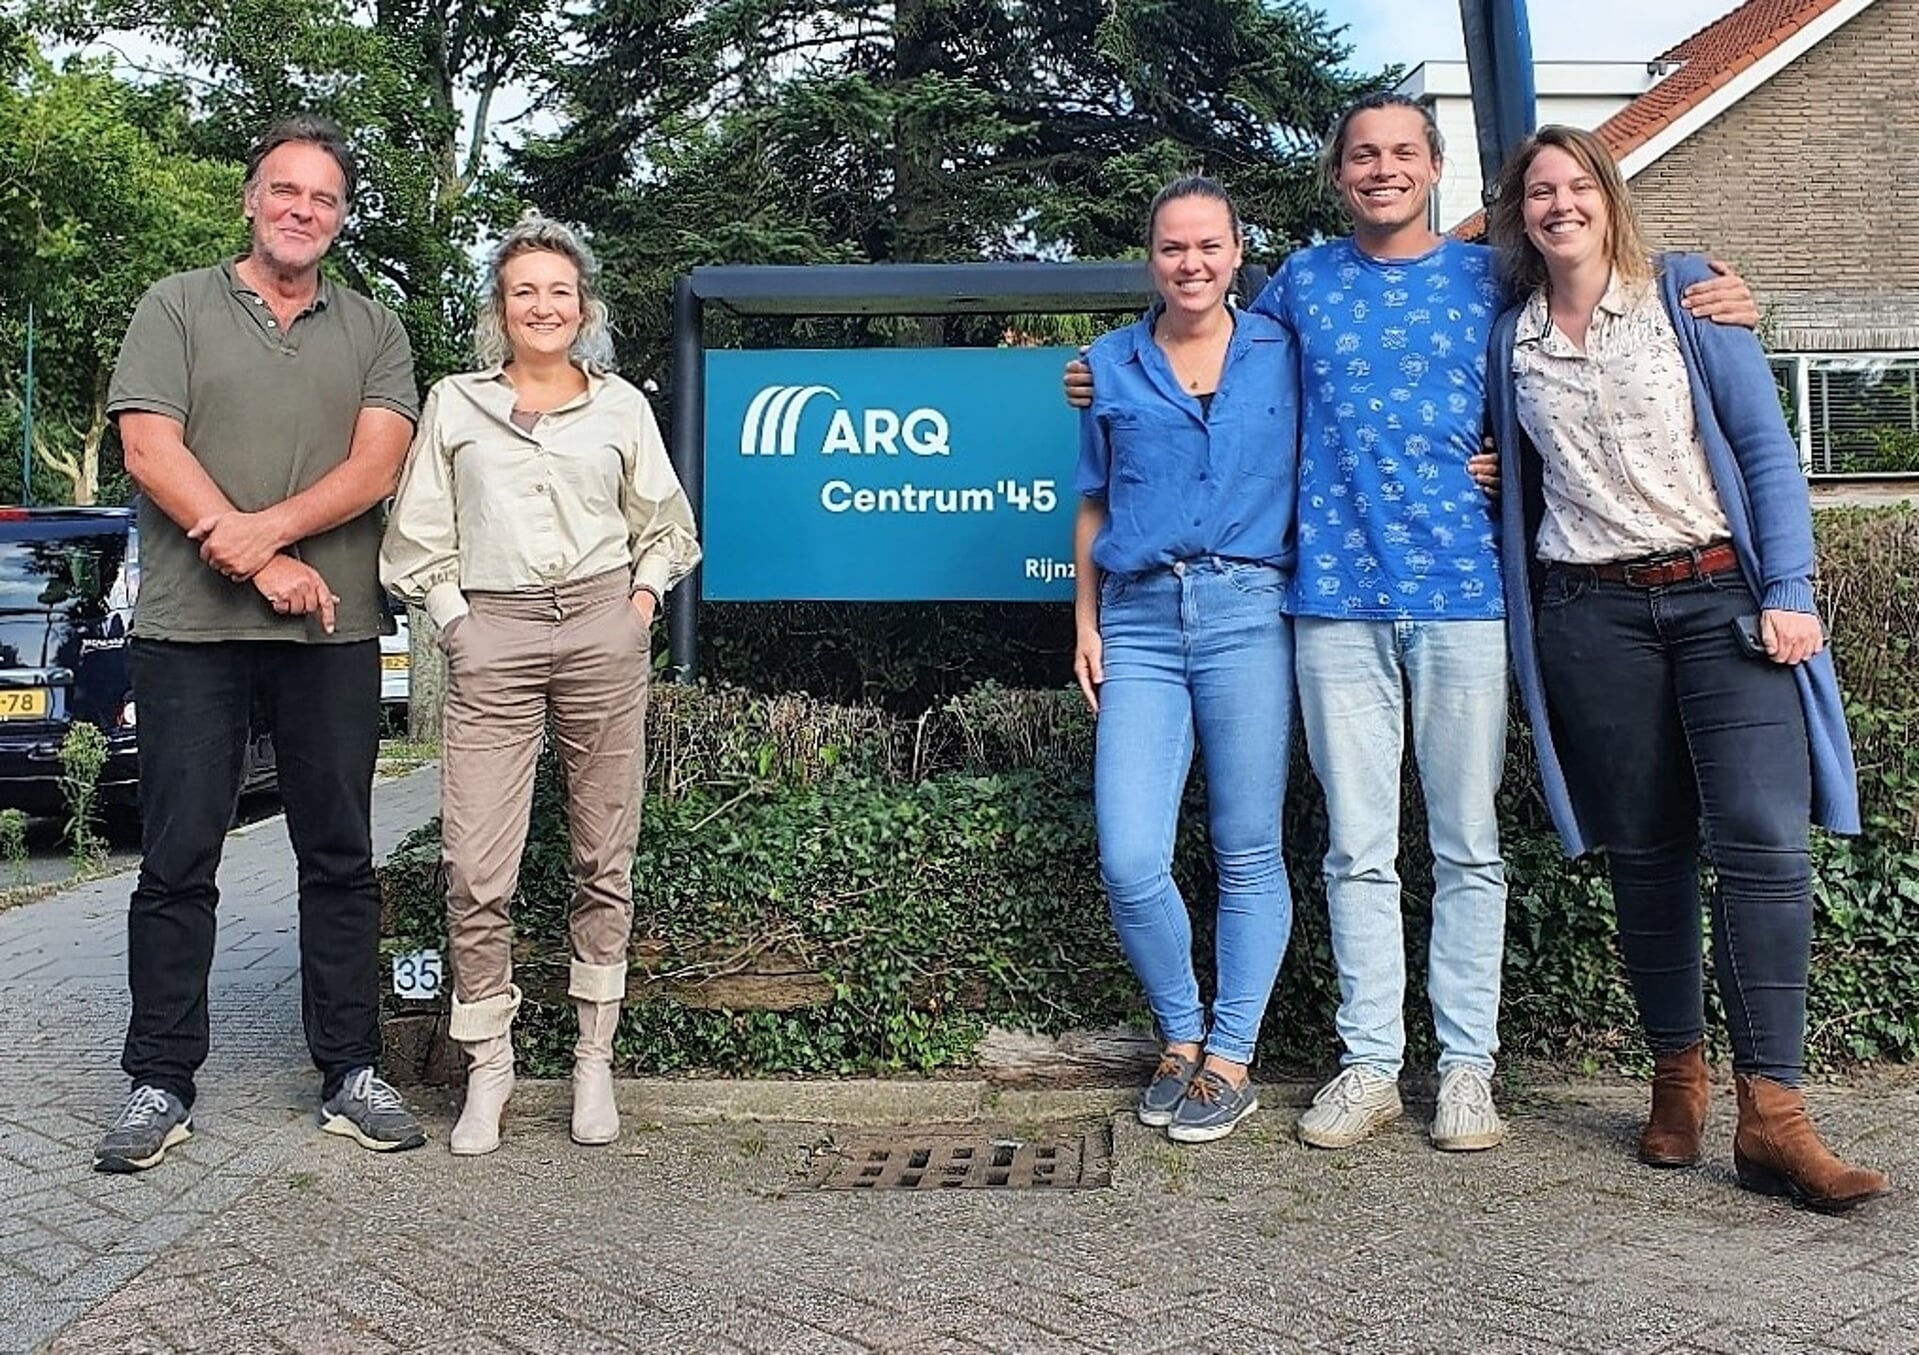 Vijf van de tien lopers van Arq Centrum ’45: v.l.n.r.: Pieter Rietdijk, Floortje Aschermann, Anne Lavooij, Willem Hoek en Astrid Vinkenvleugel.